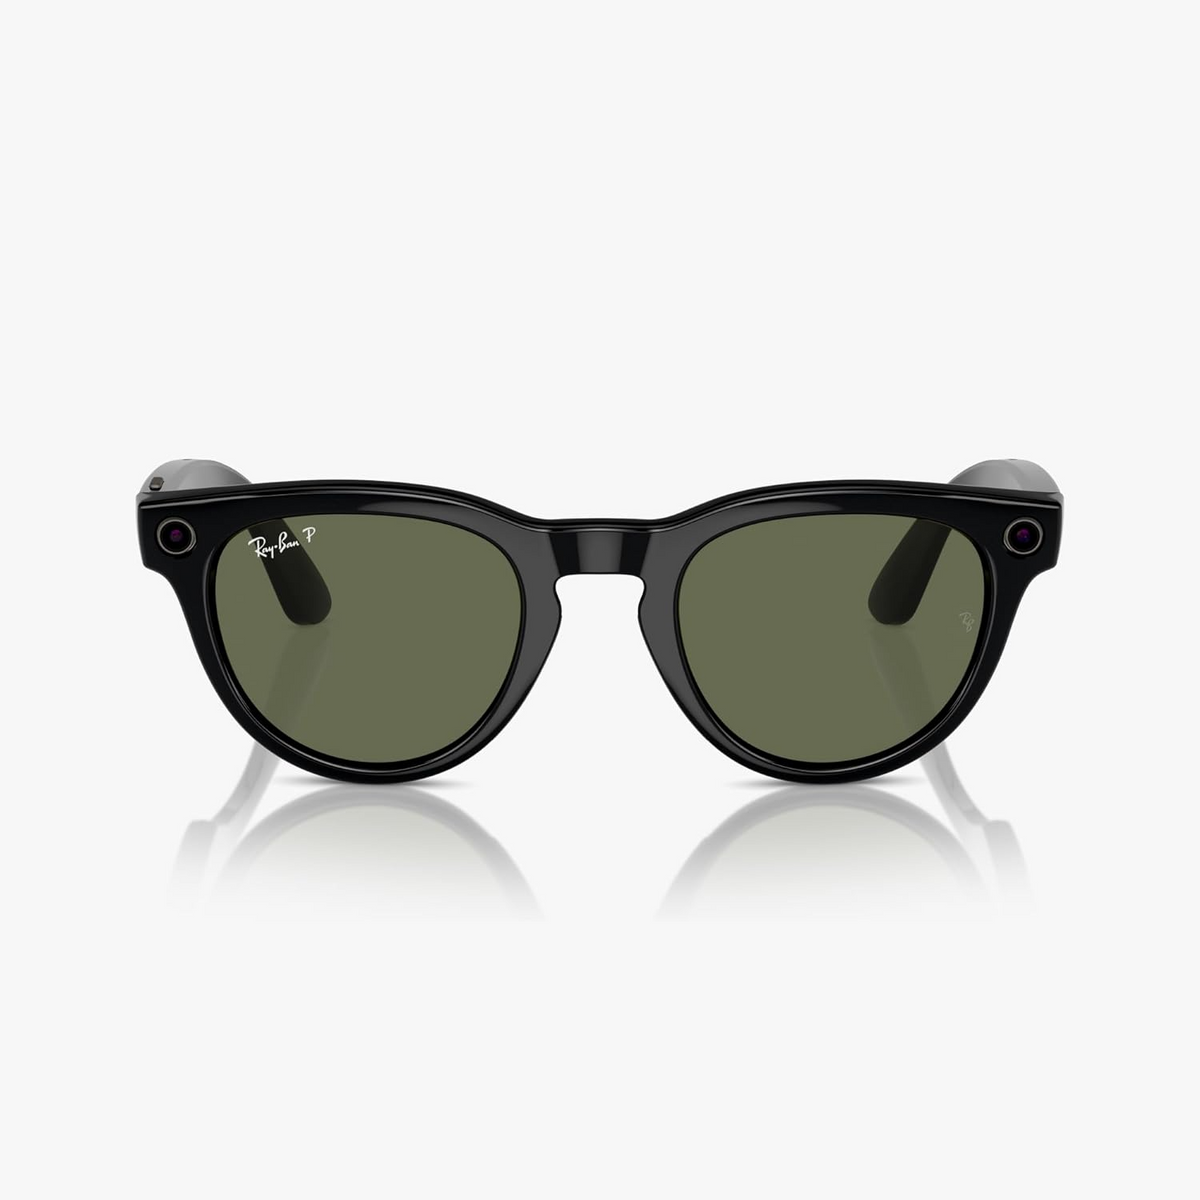 Розумні окуляри Ray-ban Meta Headliner Shiny Black / Green